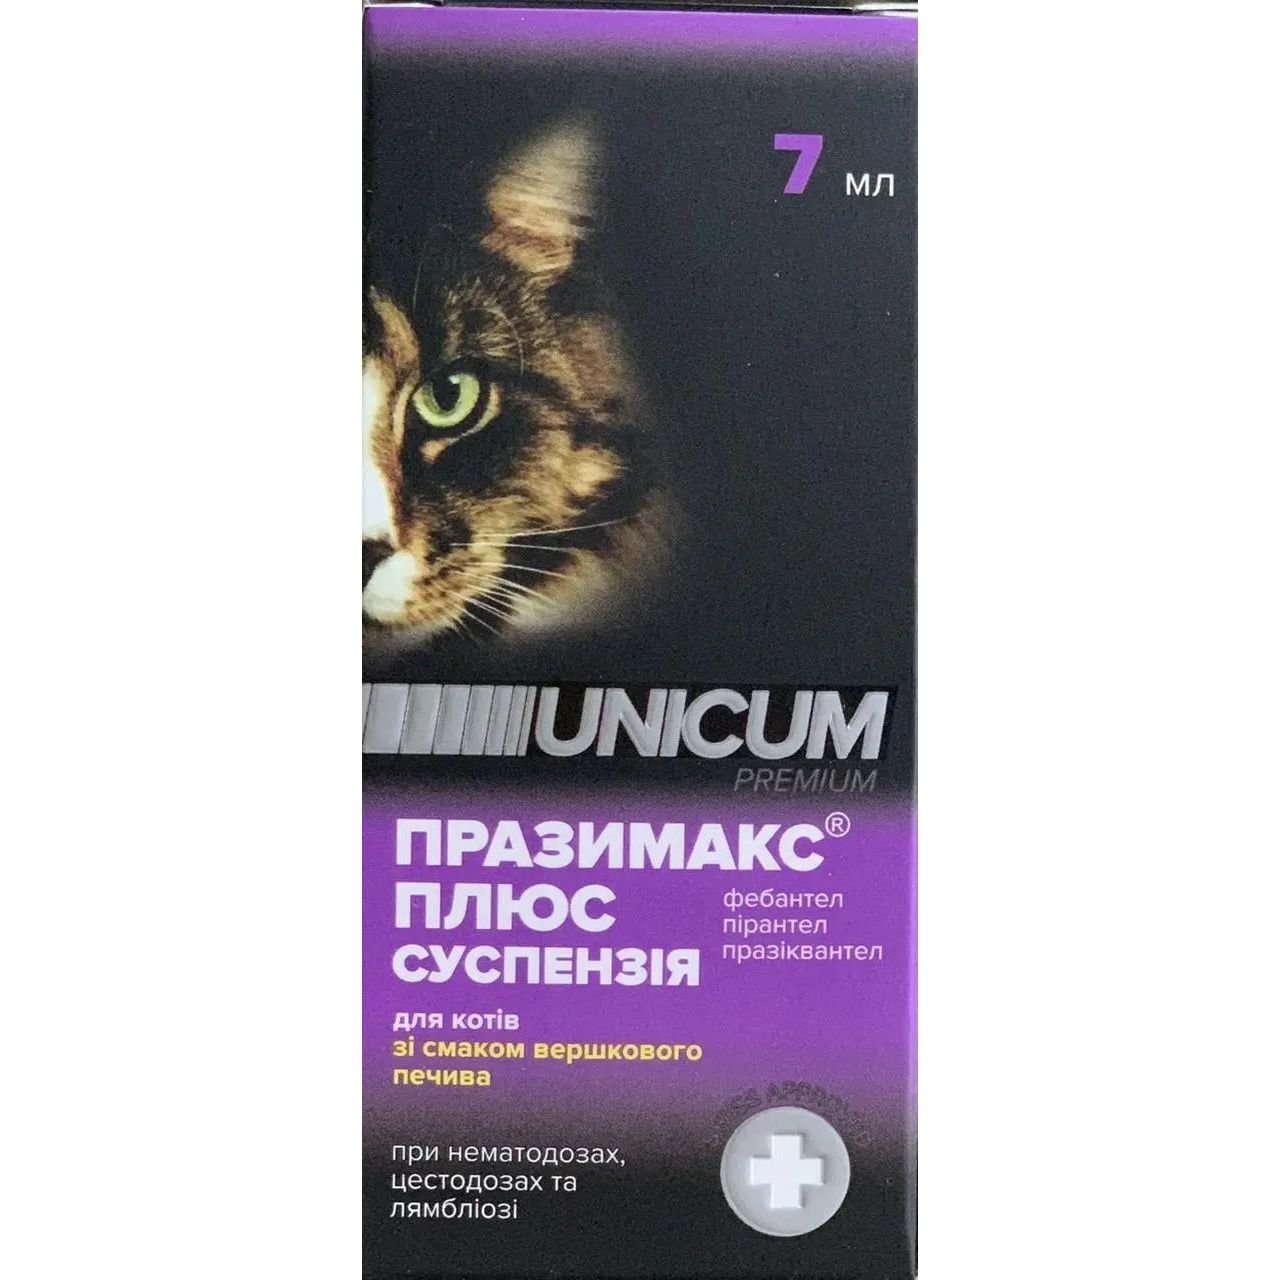 Суспензия Unicum Празимакс плюс для котов, 7 мл - фото 1